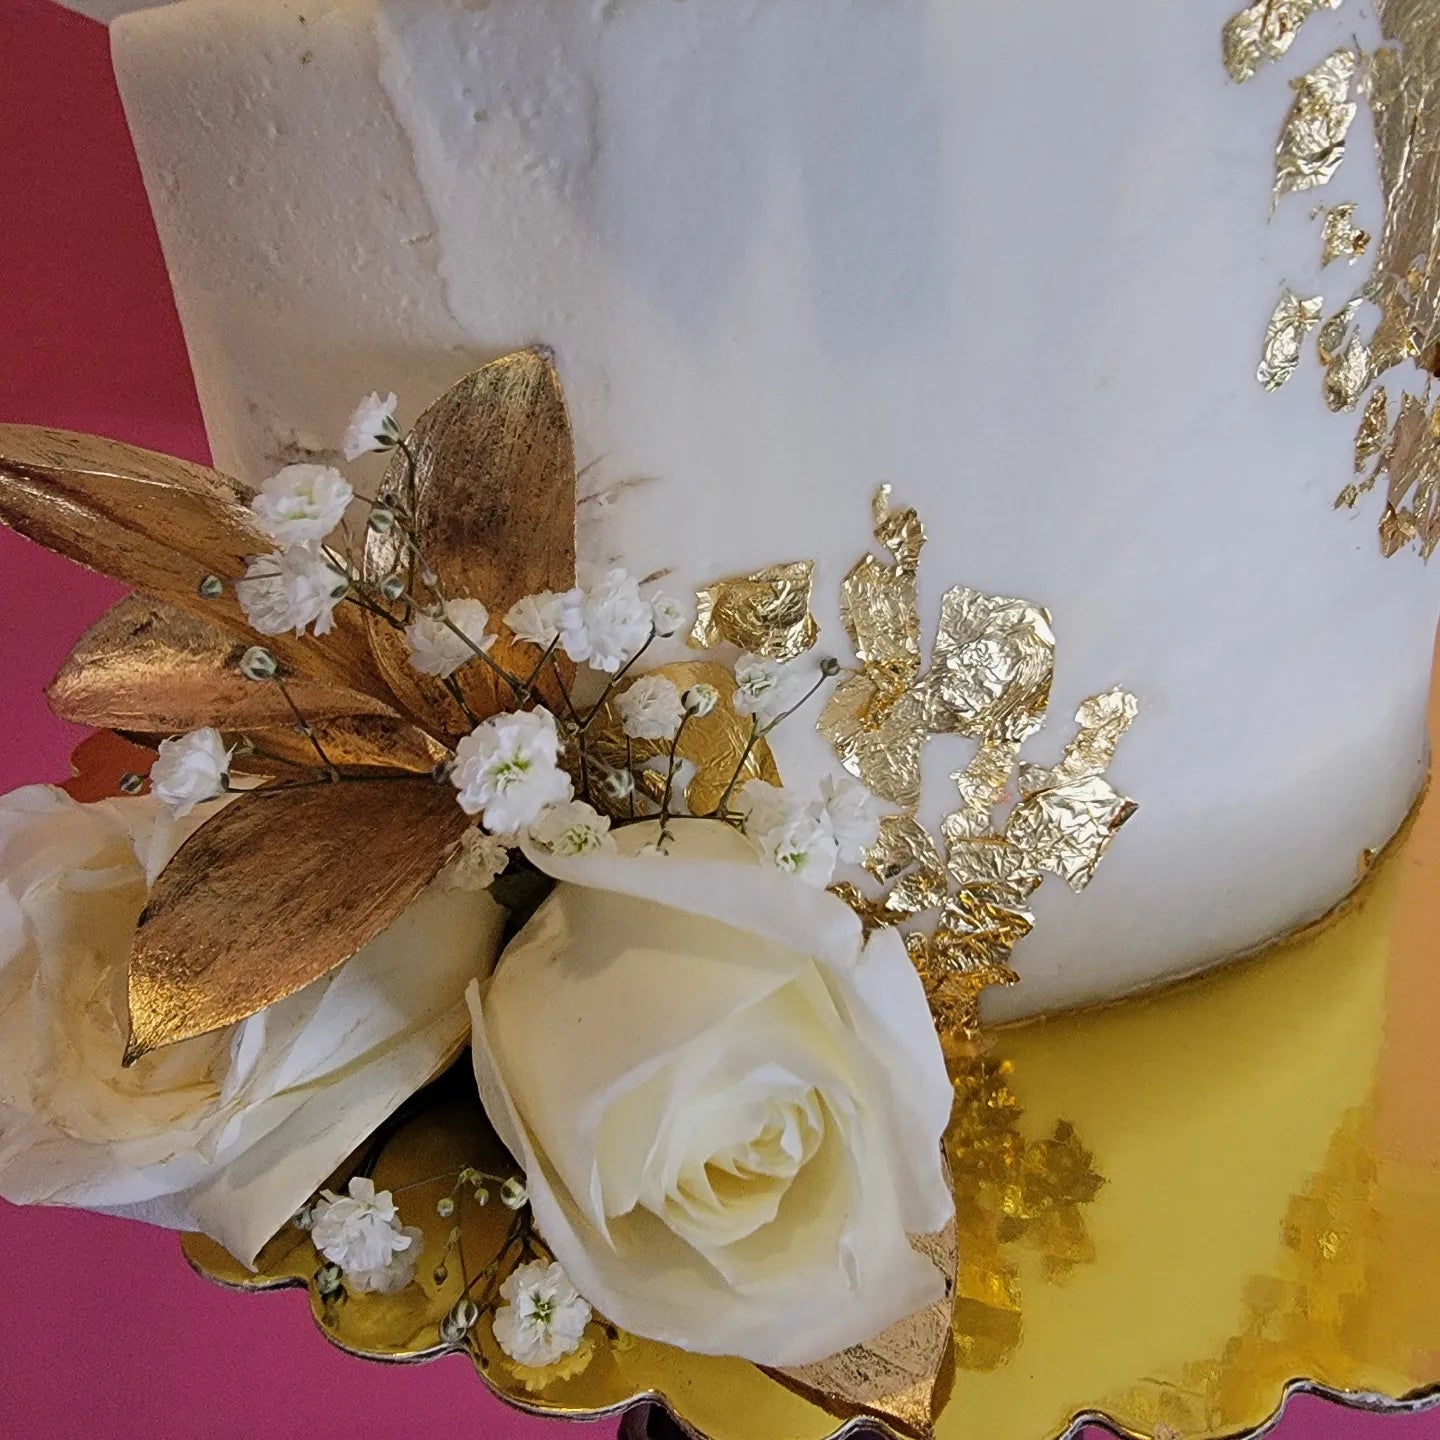 Fresh Flowers & Gold Leaf Cake